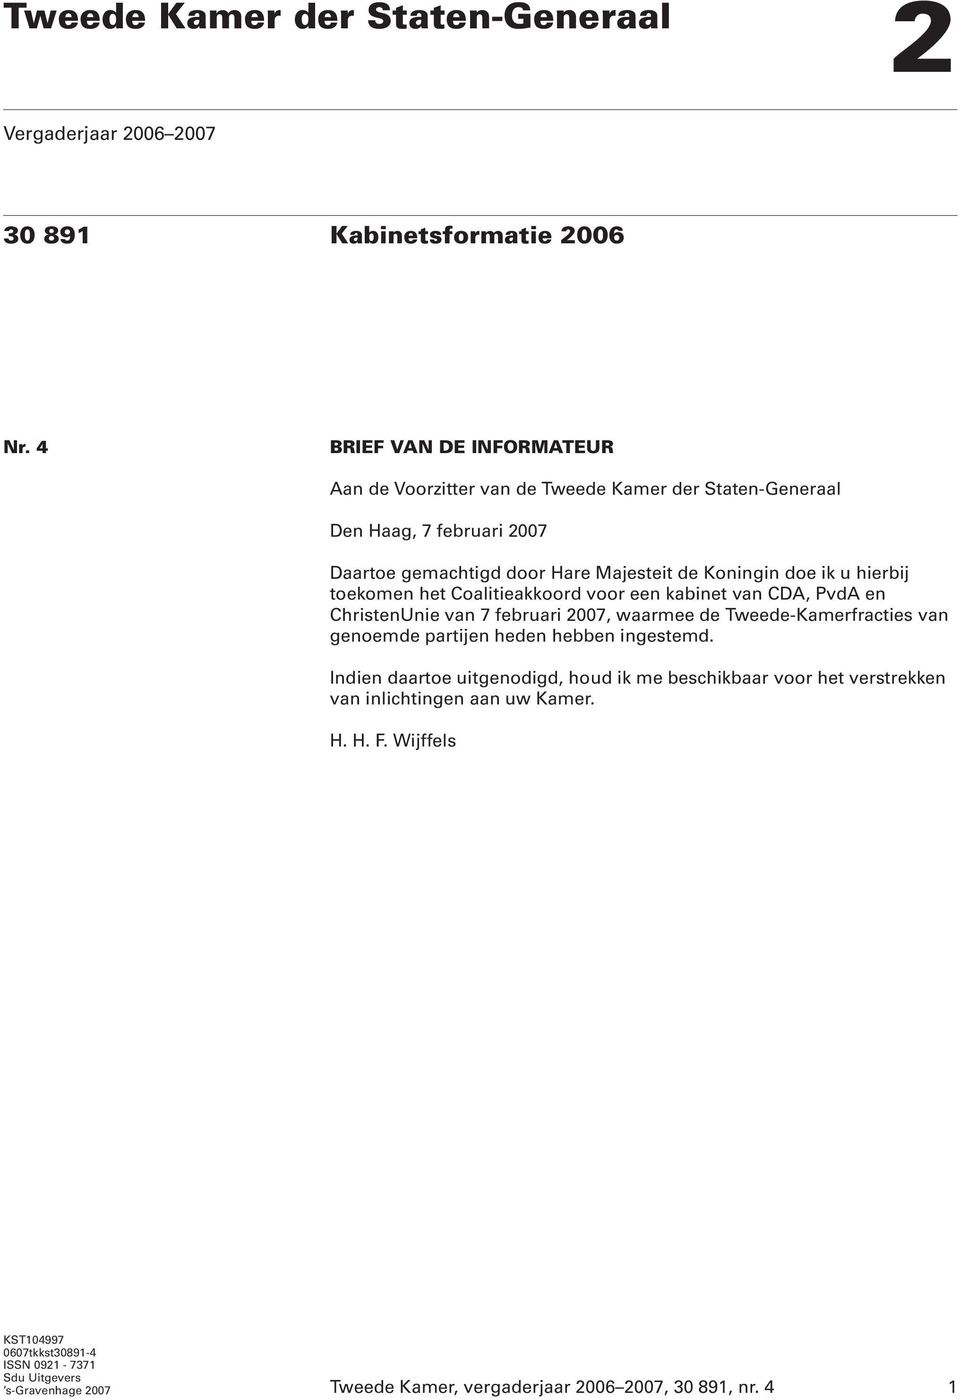 hierbij toekomen het Coalitieakkoord voor een kabinet van CDA, PvdA en ChristenUnie van 7 februari 2007, waarmee de Tweede-Kamerfracties van genoemde partijen heden hebben